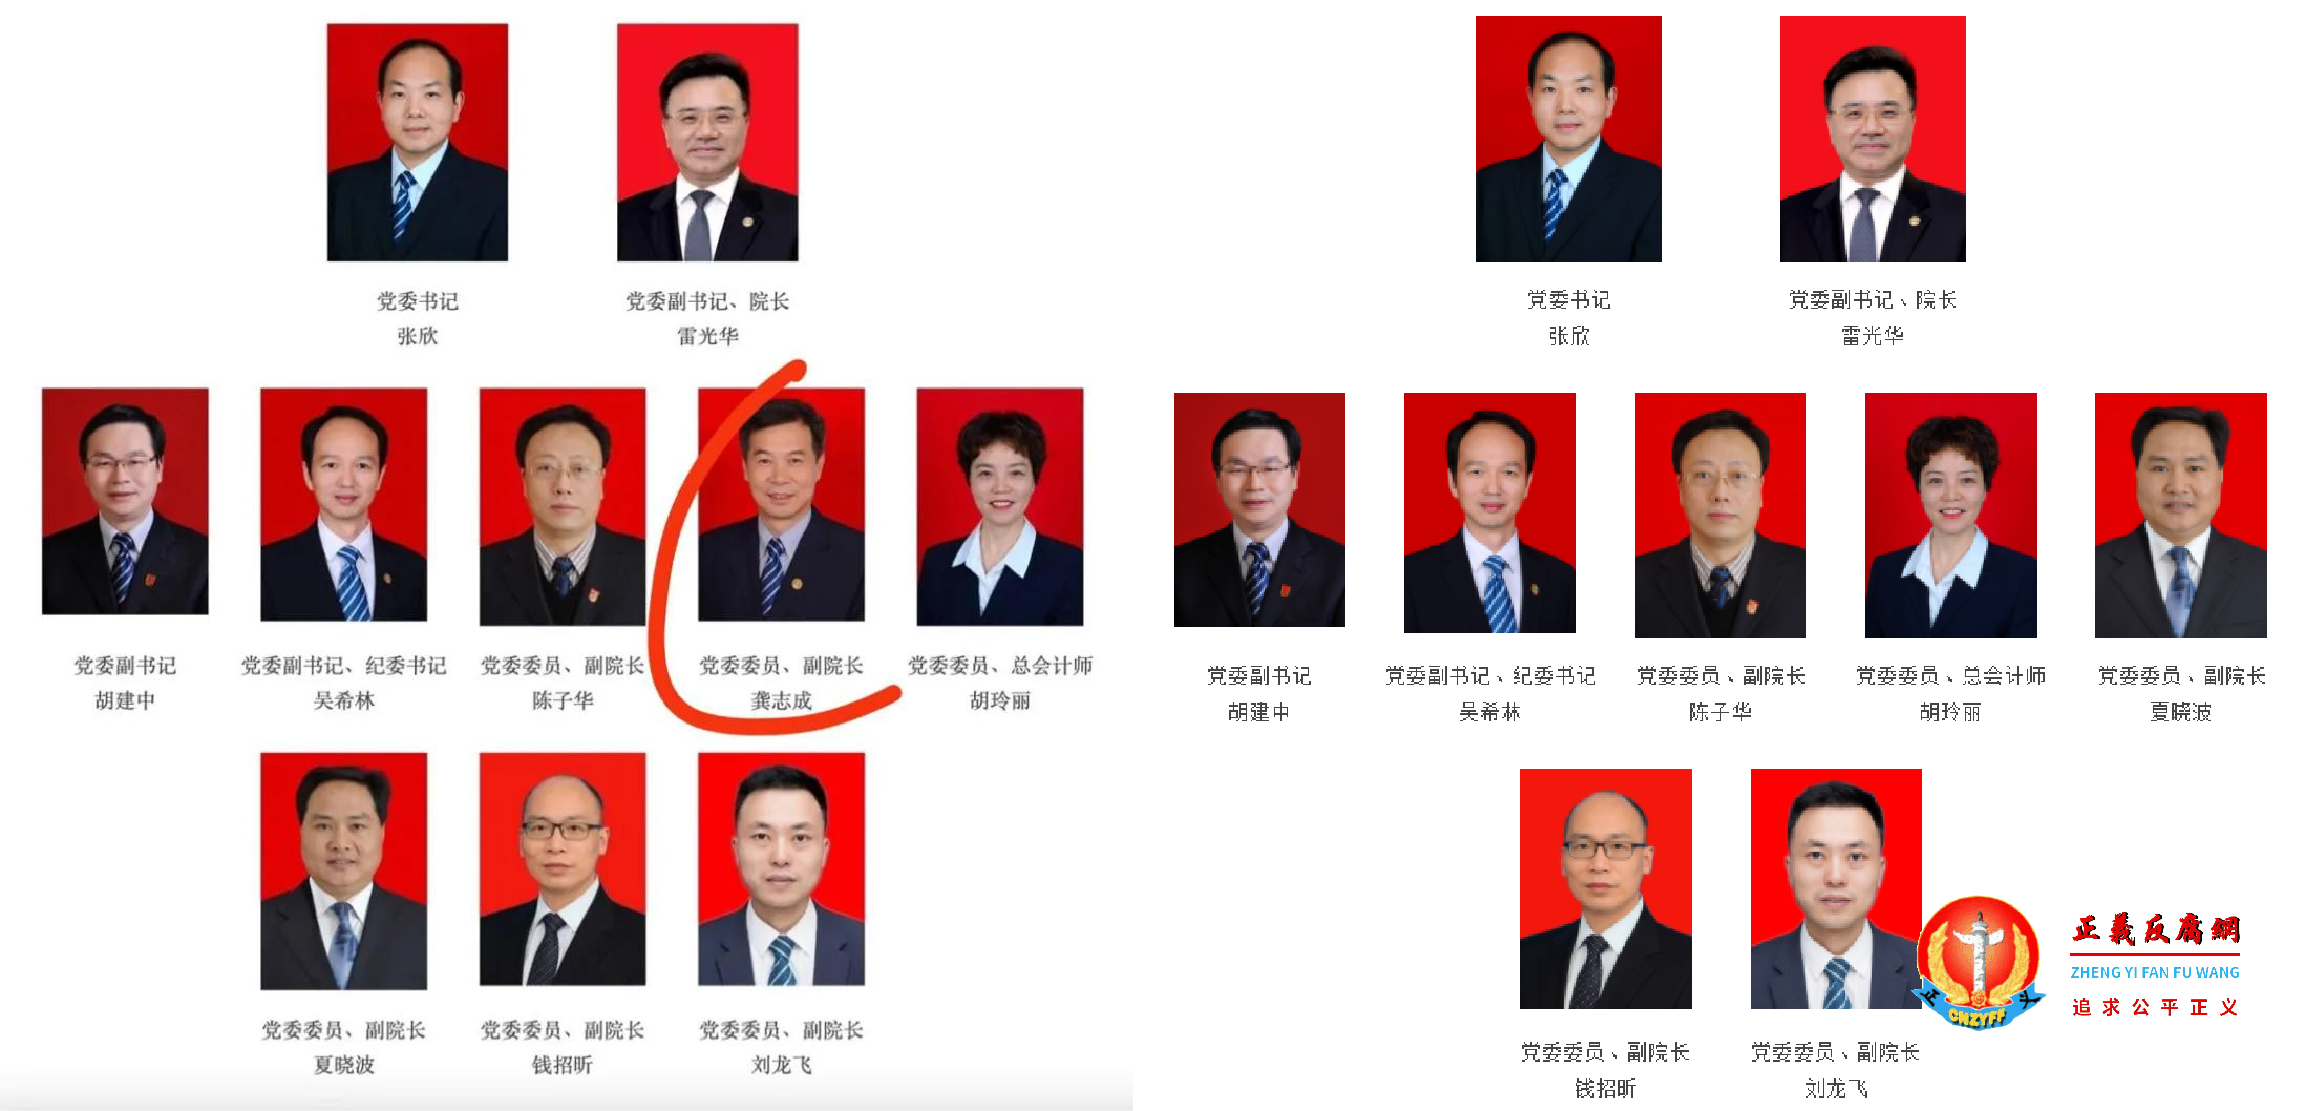 湘雅医院网站领导团队名单十人（左图），7月1日，龚志成的头像与简历从领导团队中撤下只剩九人（右图）.png